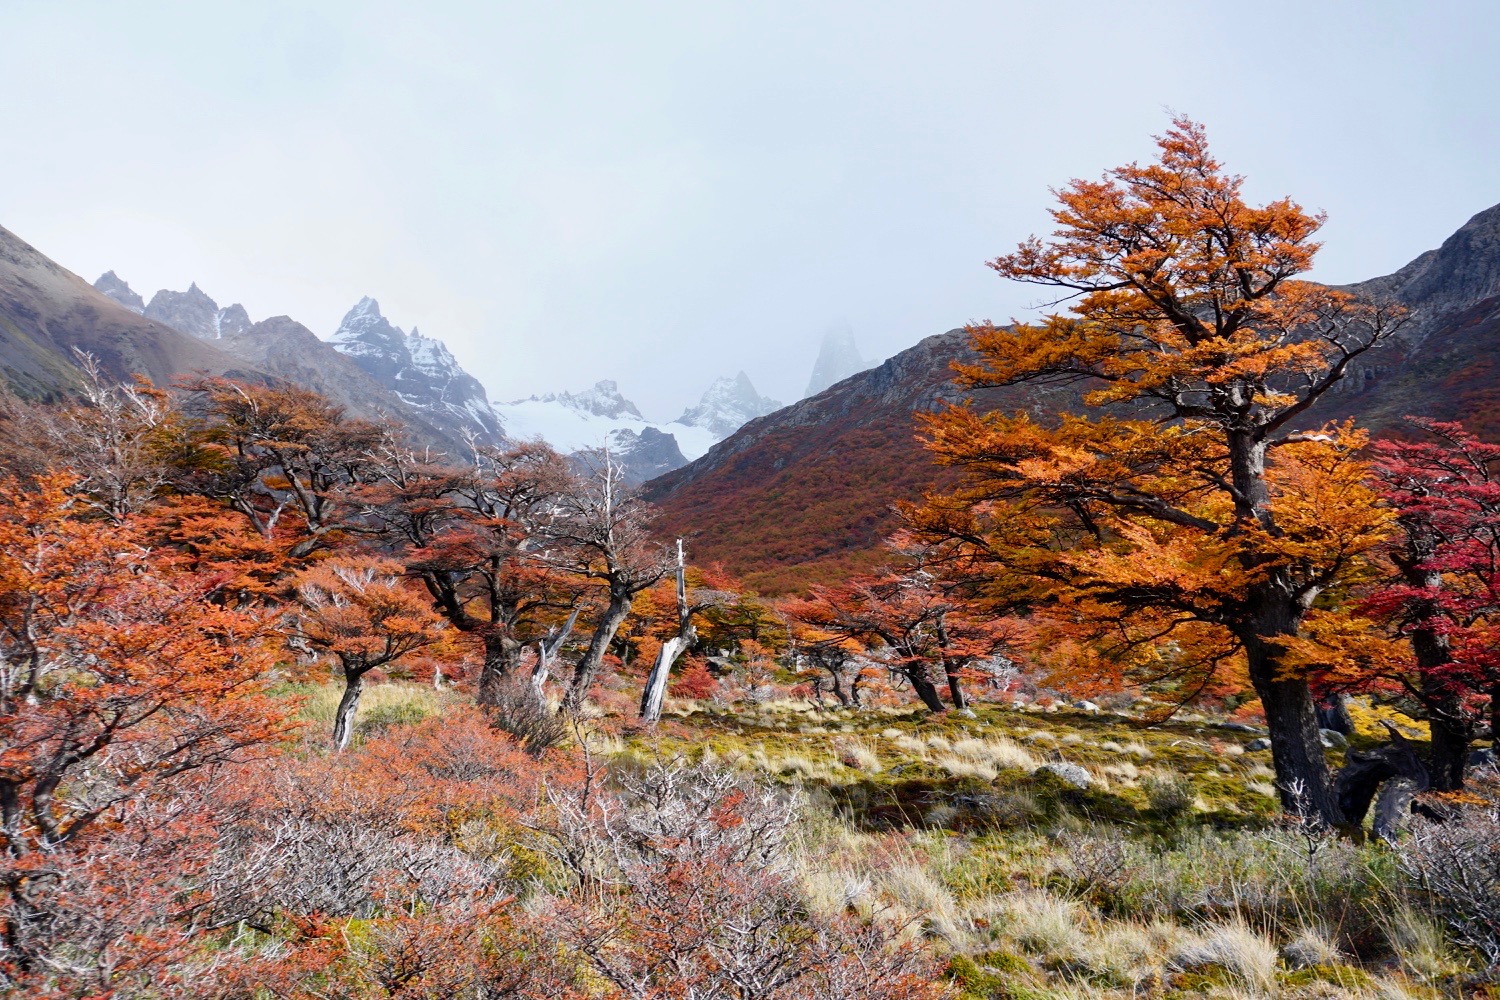 El chalten, randonnée fitz roy, laguna de los tres, patagonie, argentine